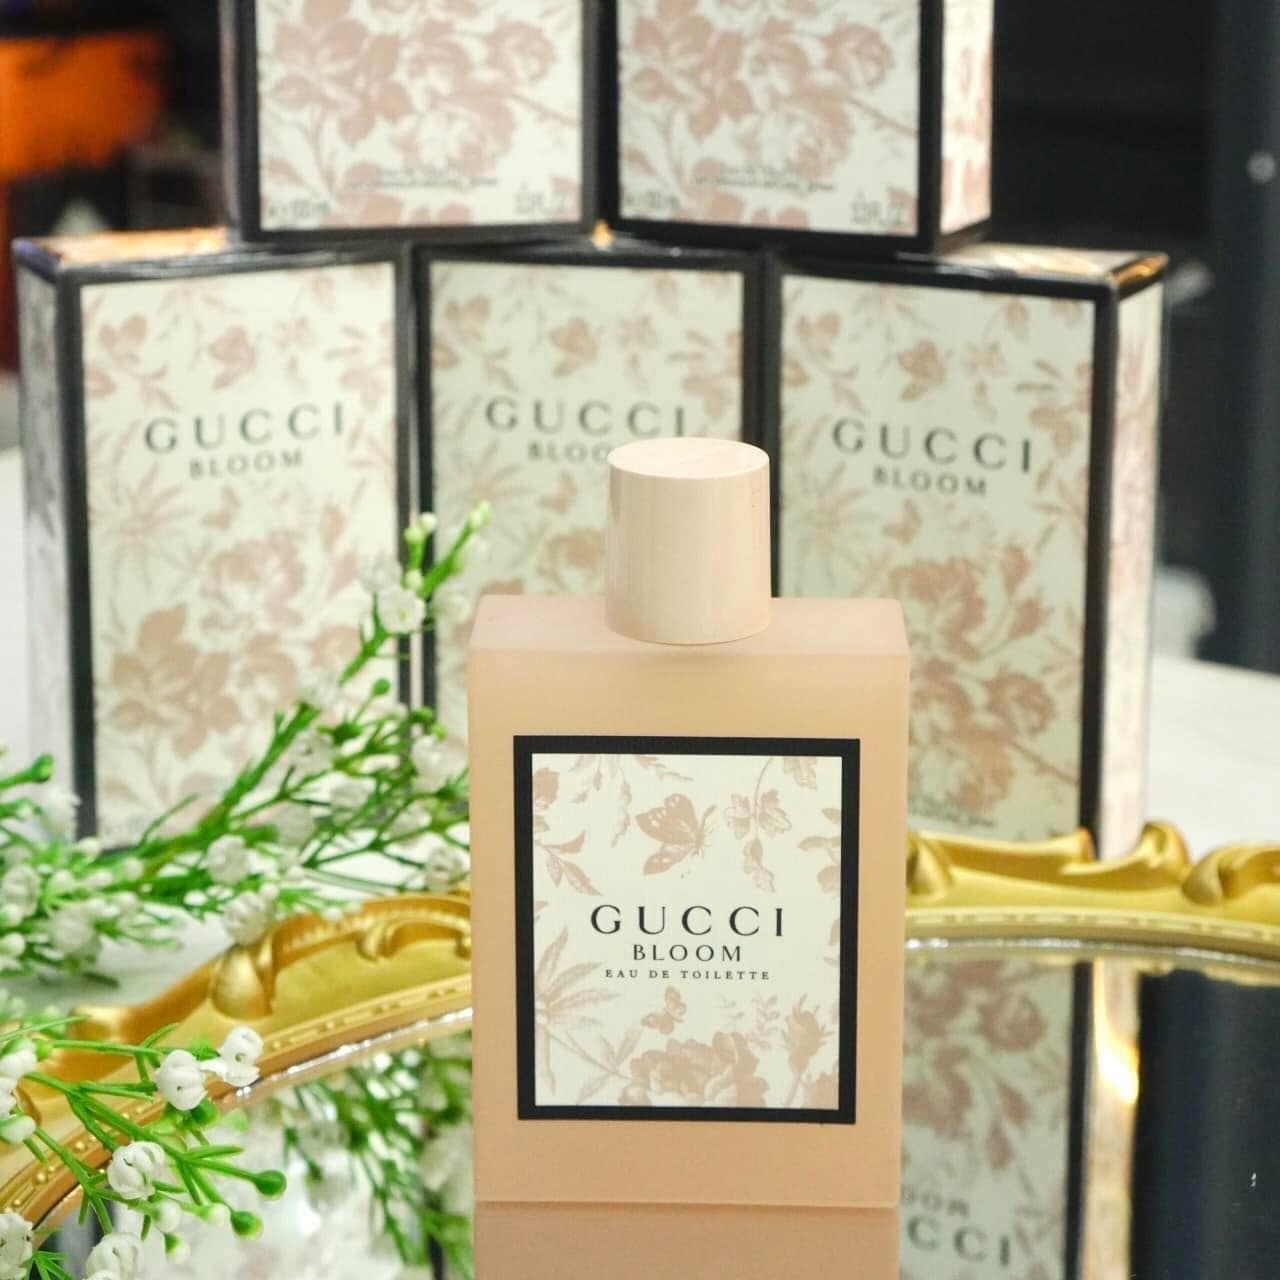 Gucci Bloom Eau de Toilette 2 - Nuochoarosa.com - Nước hoa cao cấp, chính hãng giá tốt, mẫu mới